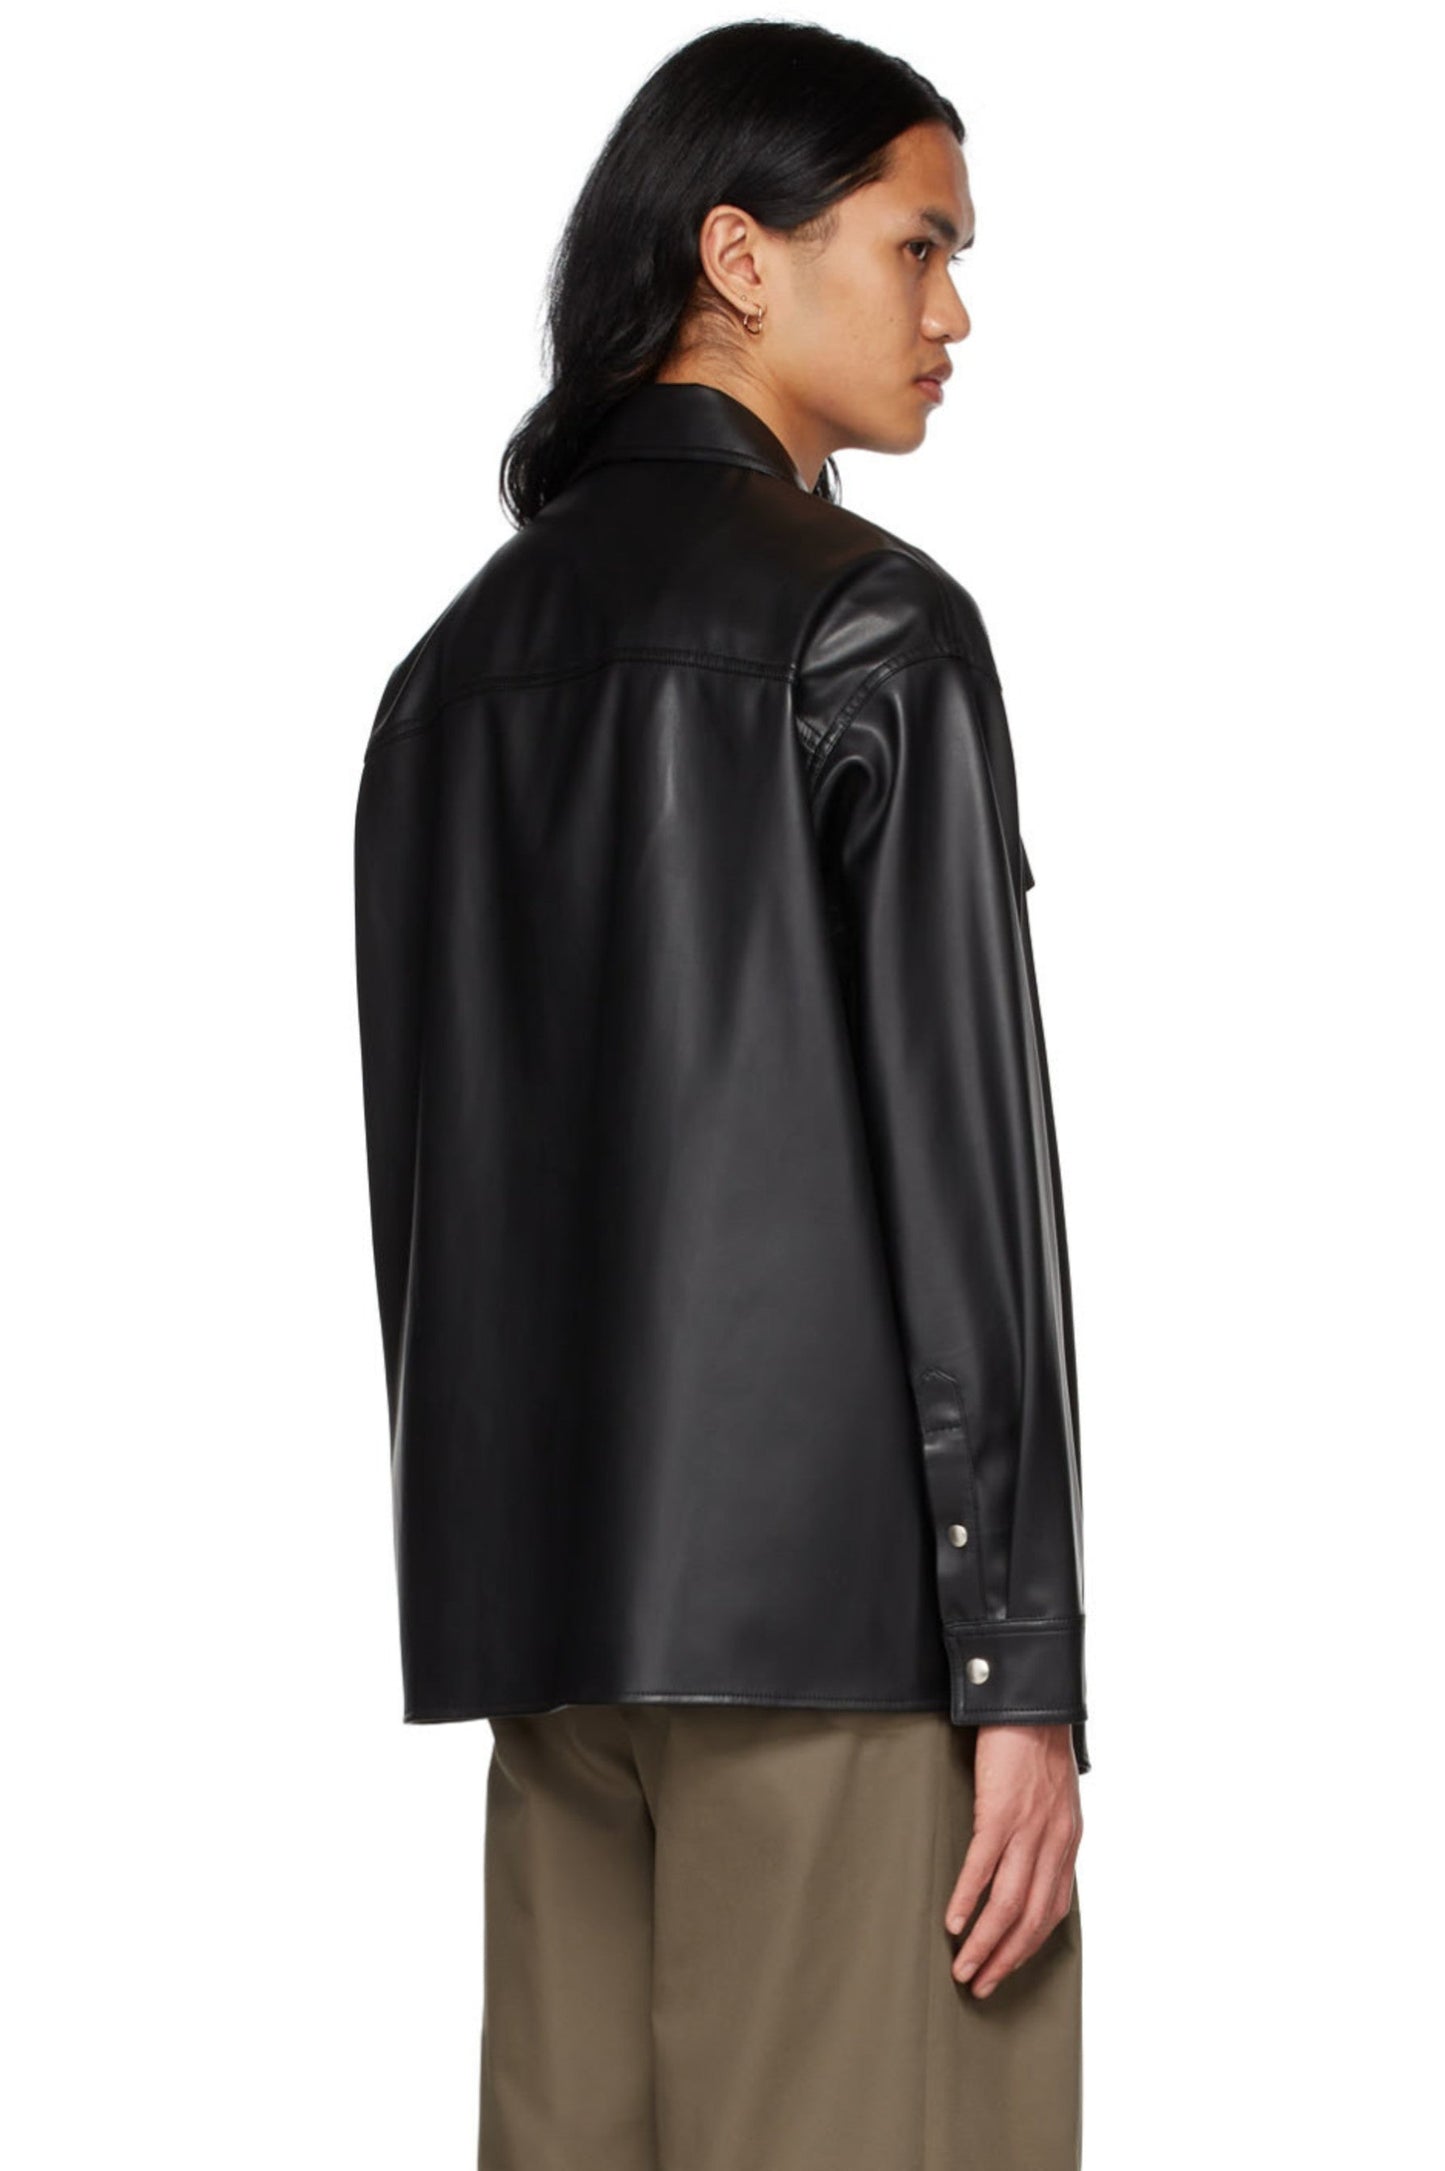 Men's Black Leather Full Sleeves Oversized Shirt